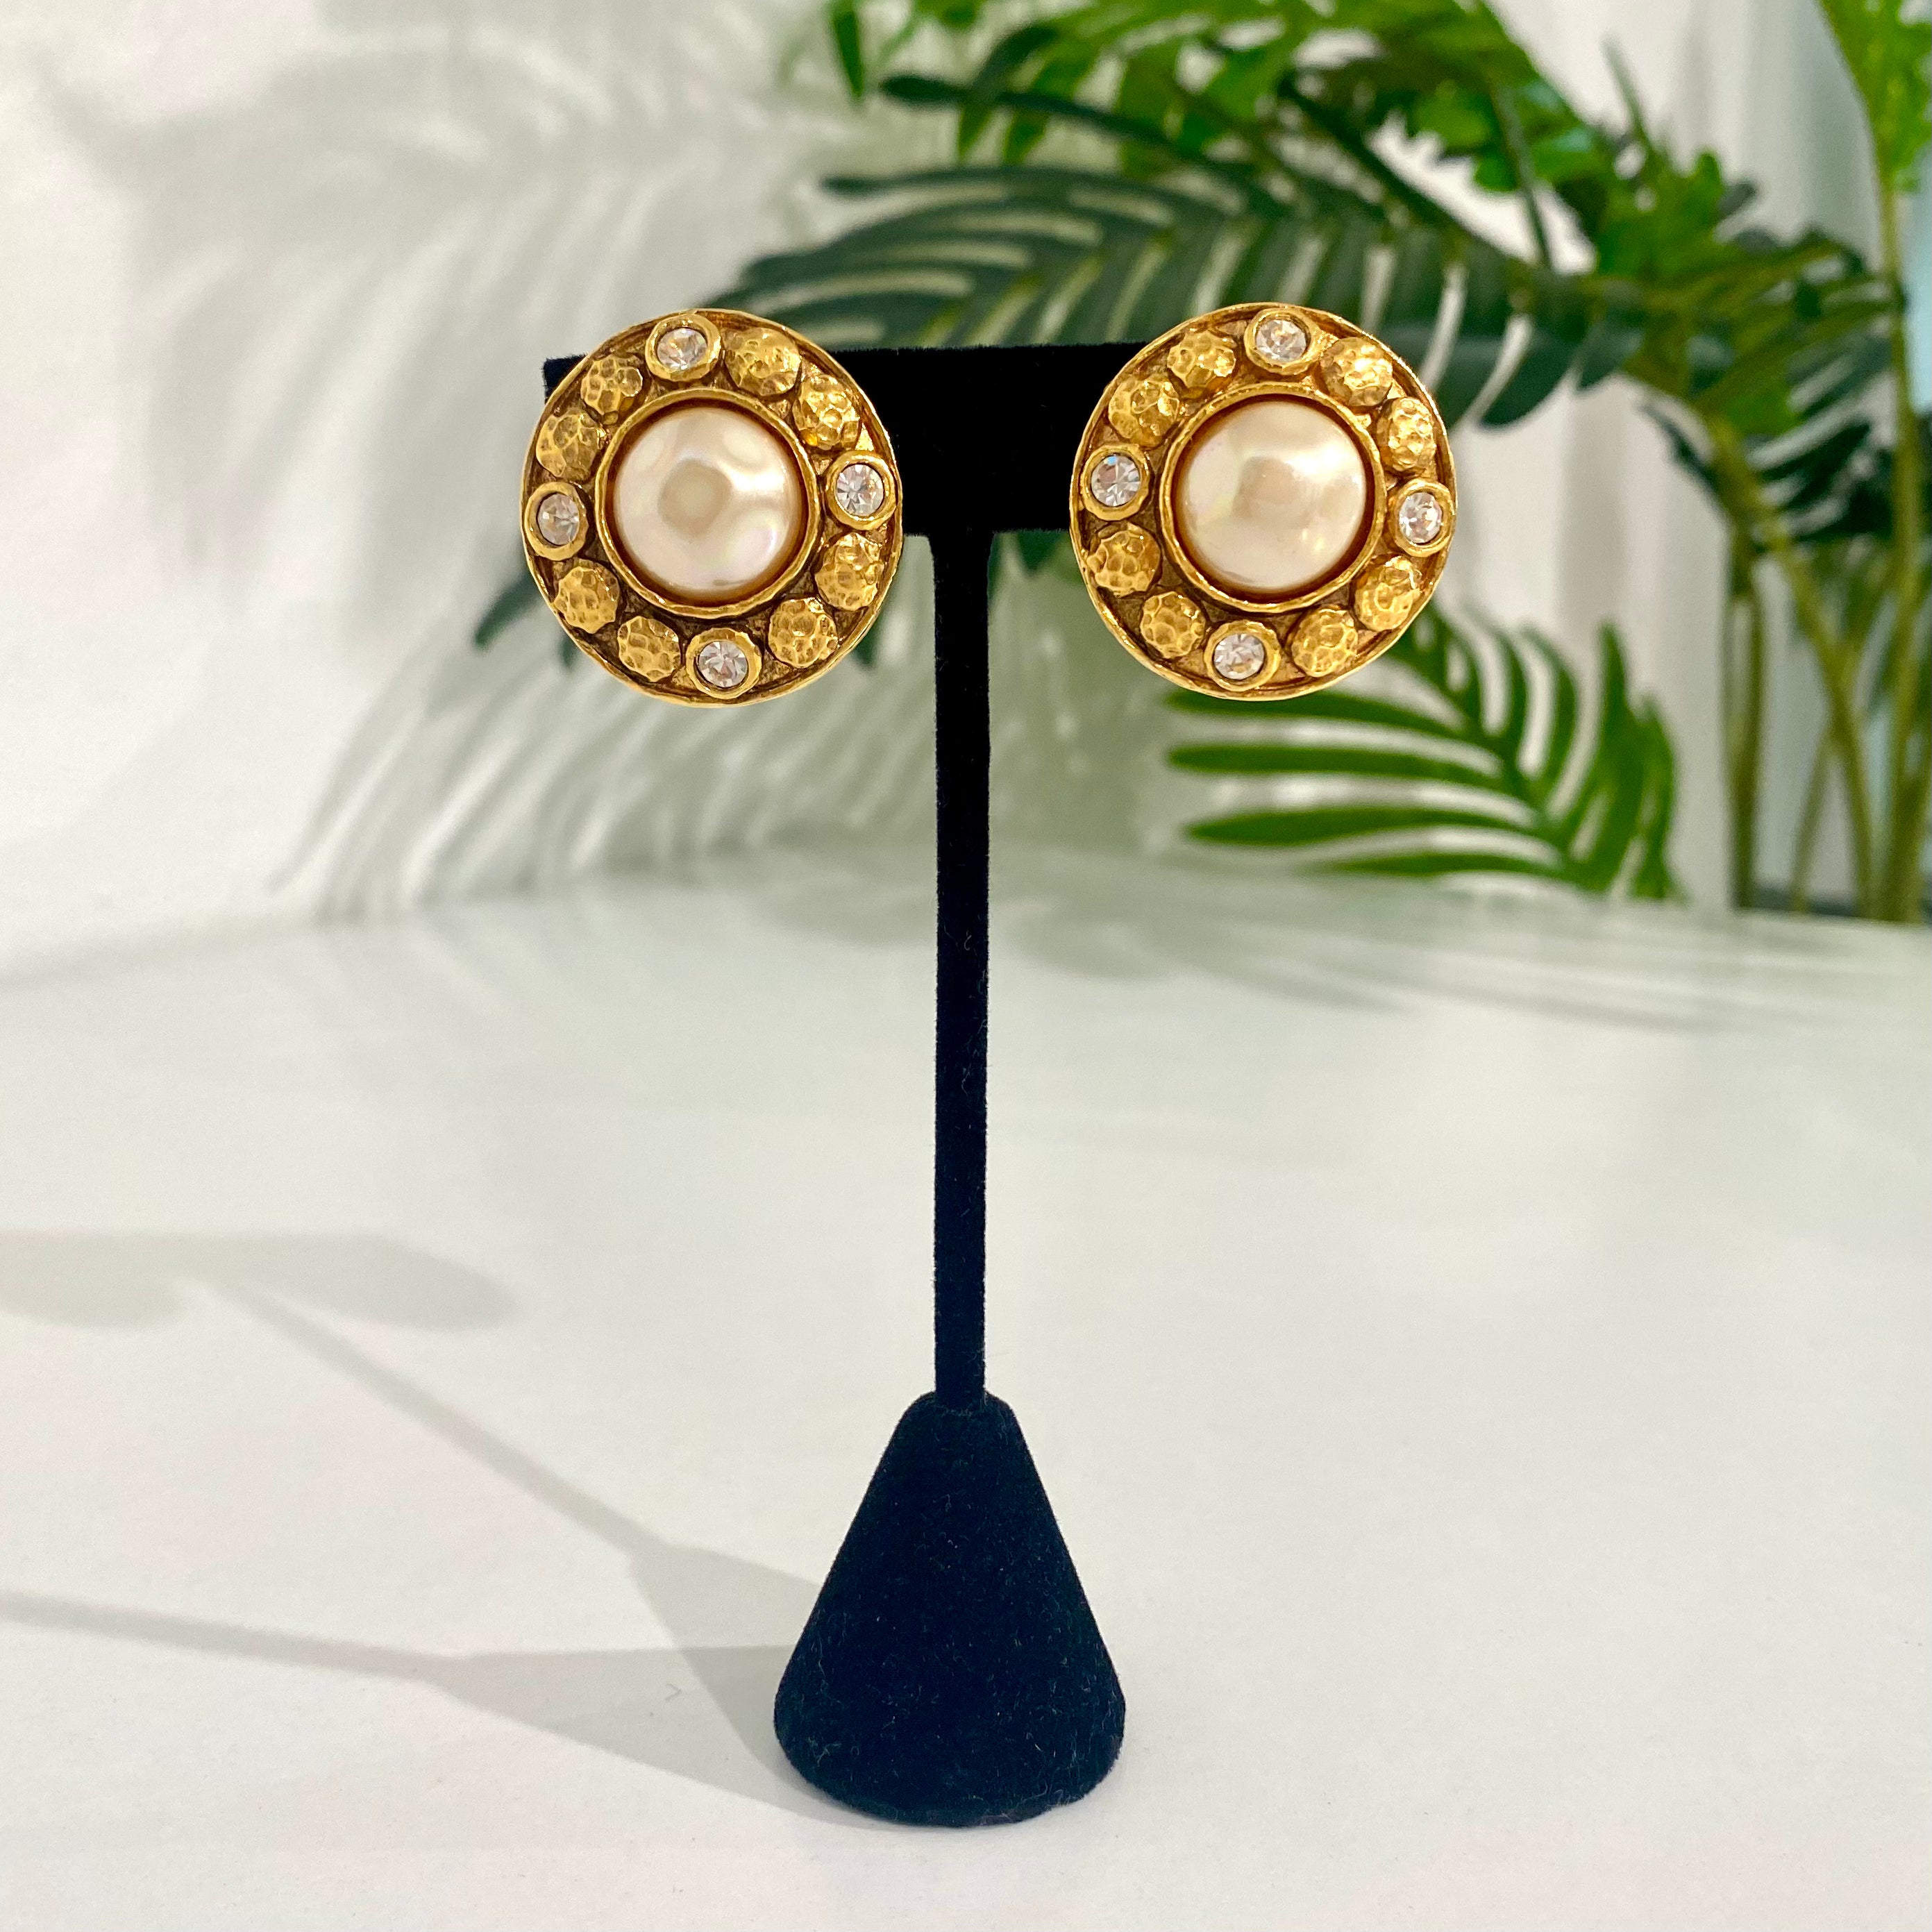 Chanel Vintage Pearl & Crystal Earrings